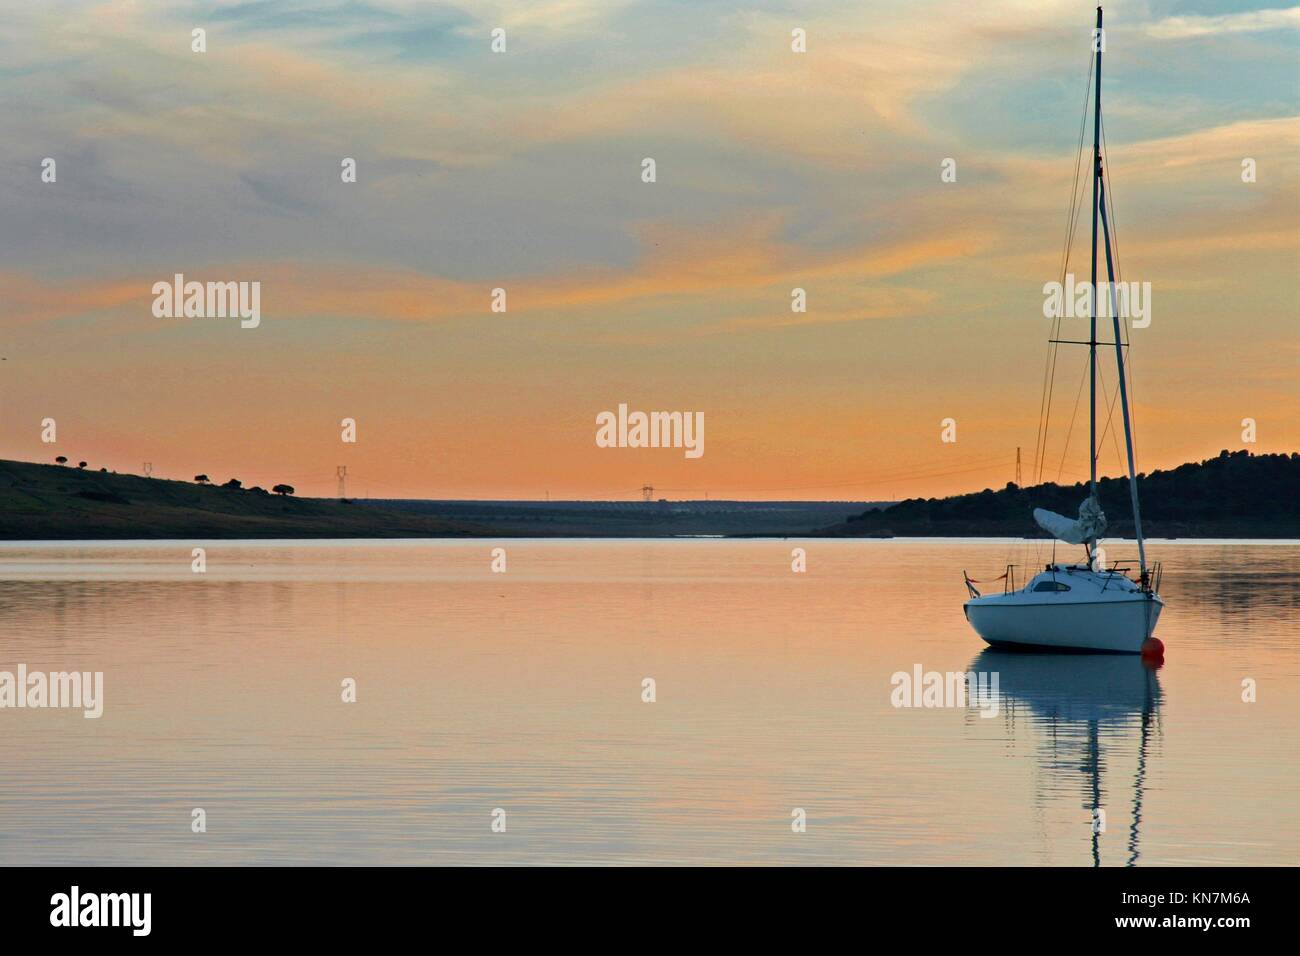 Barca a vela ancorata nel mezzo di Alange serbatoio, Spagna. Ora del tramonto. Foto Stock